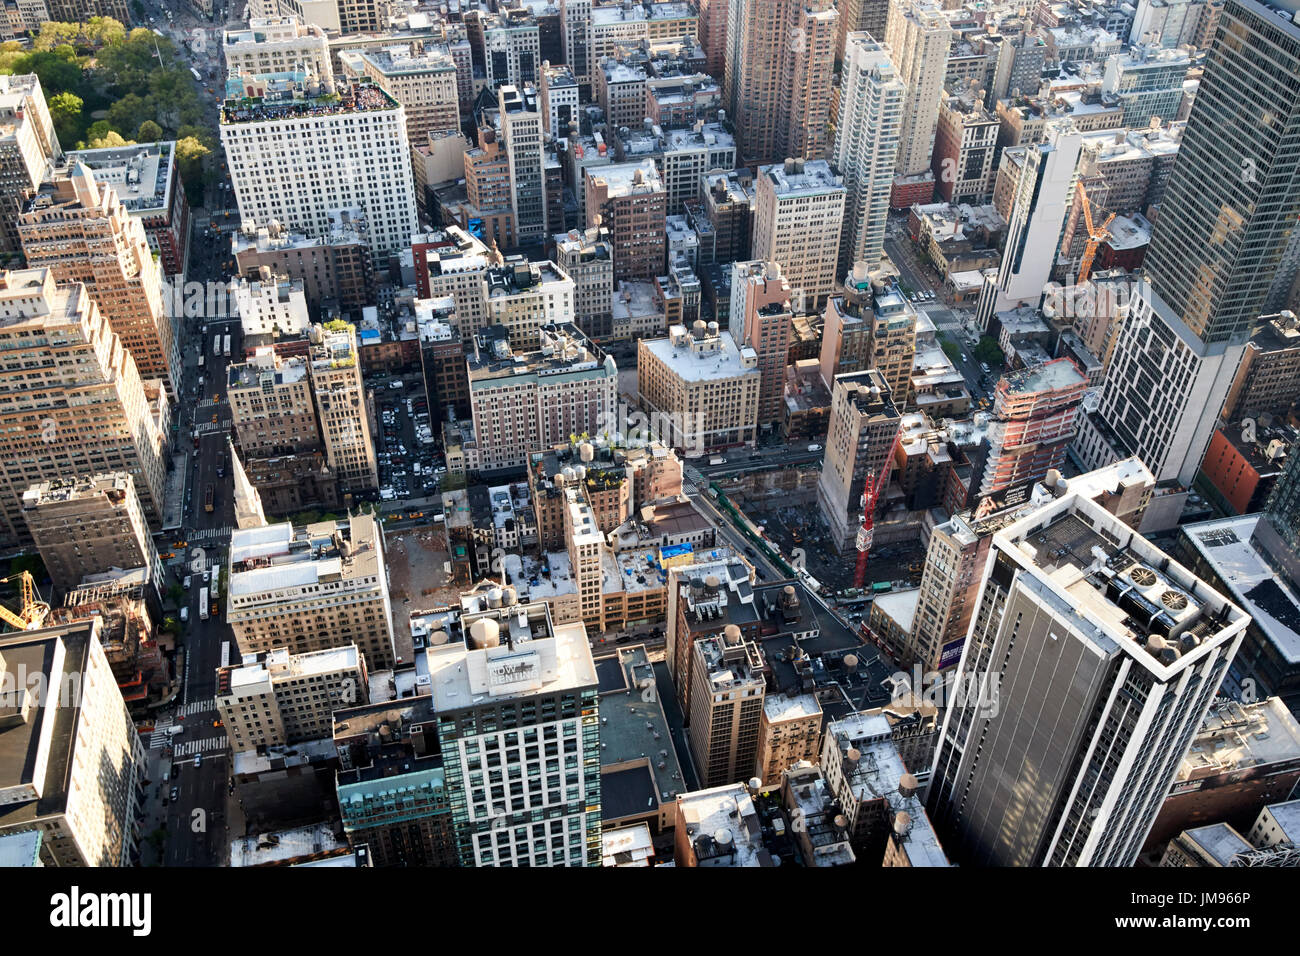 Vista aérea de la ciudad de Nueva York mirando a nomad midtown south central EE.UU. Foto de stock